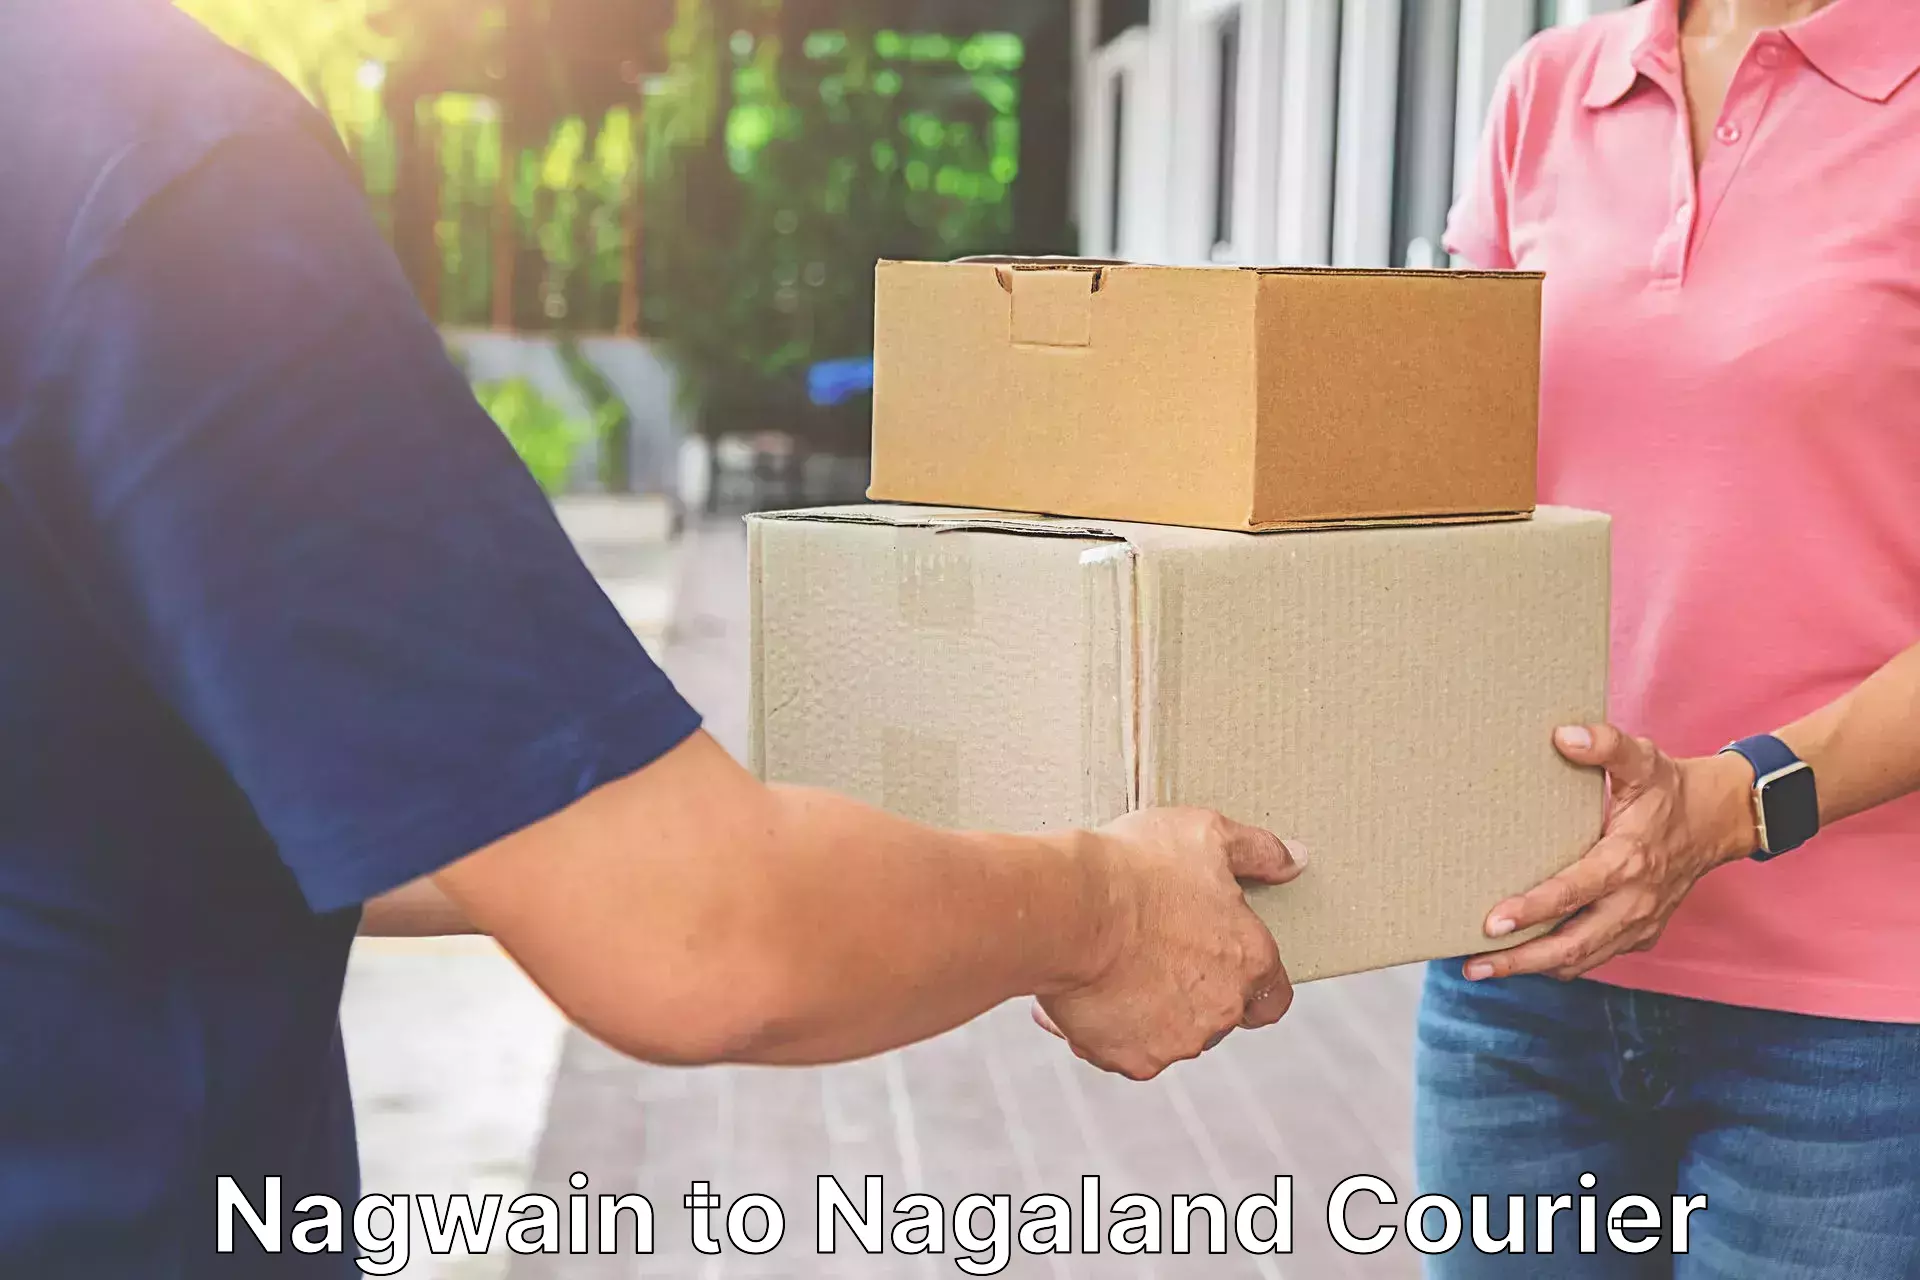 Express package handling Nagwain to NIT Nagaland